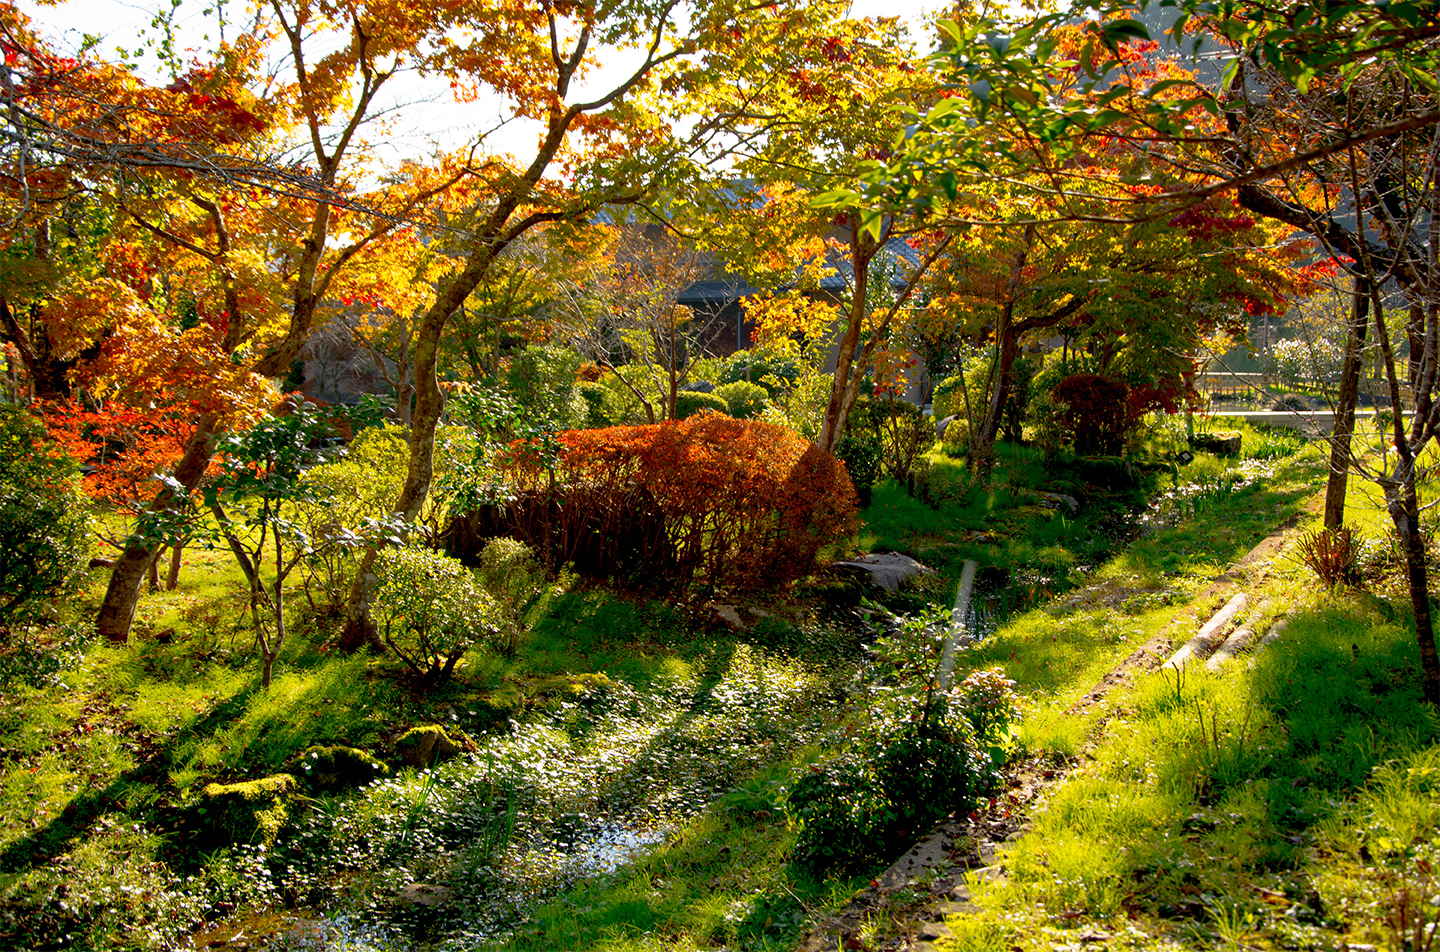 綾部の料亭 ゆう月 秋の庭園風景 紅葉